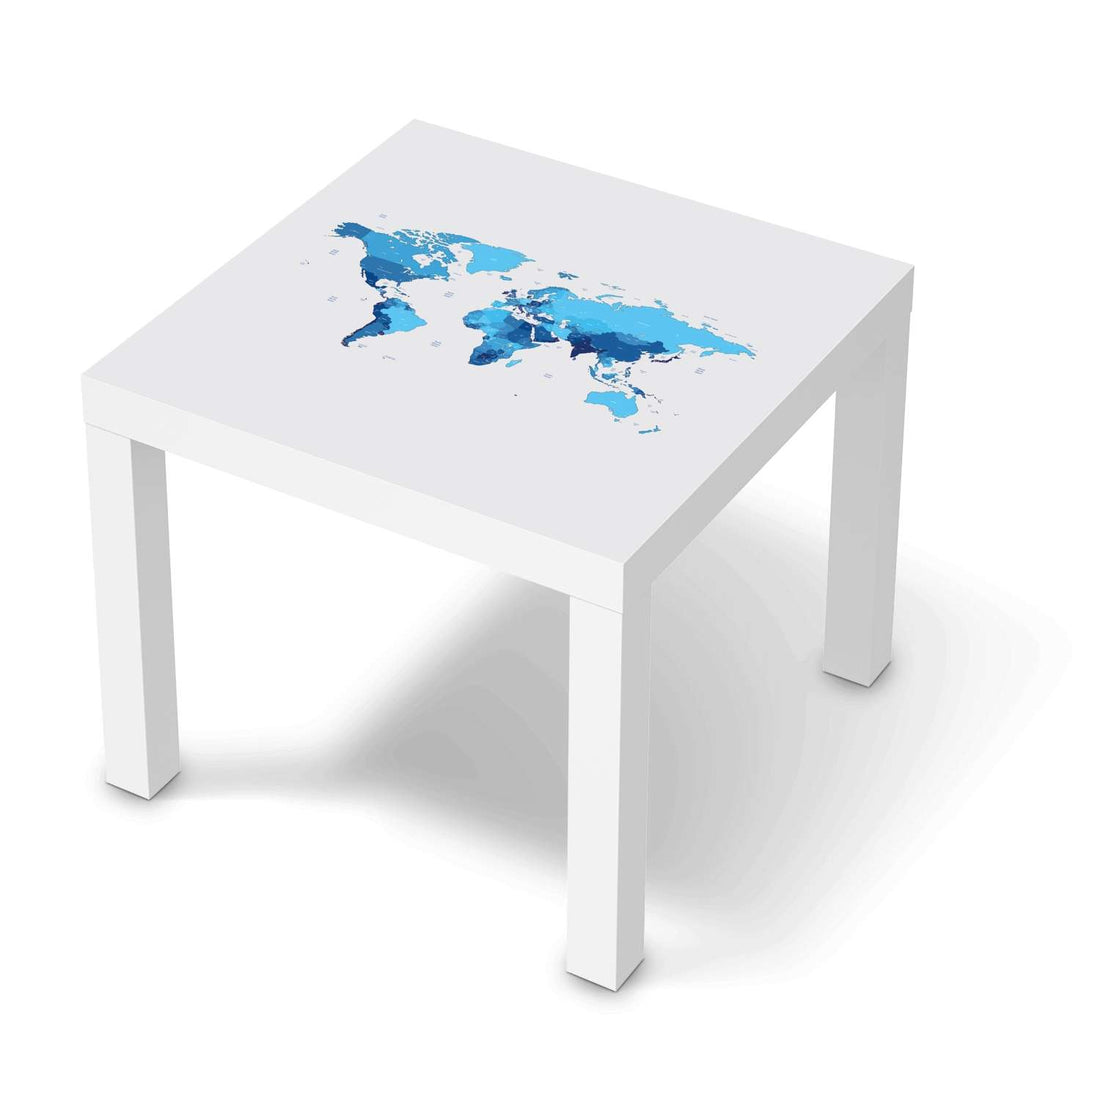 Möbelfolie Politische Weltkarte - IKEA Lack Tisch 55x55 cm - weiss